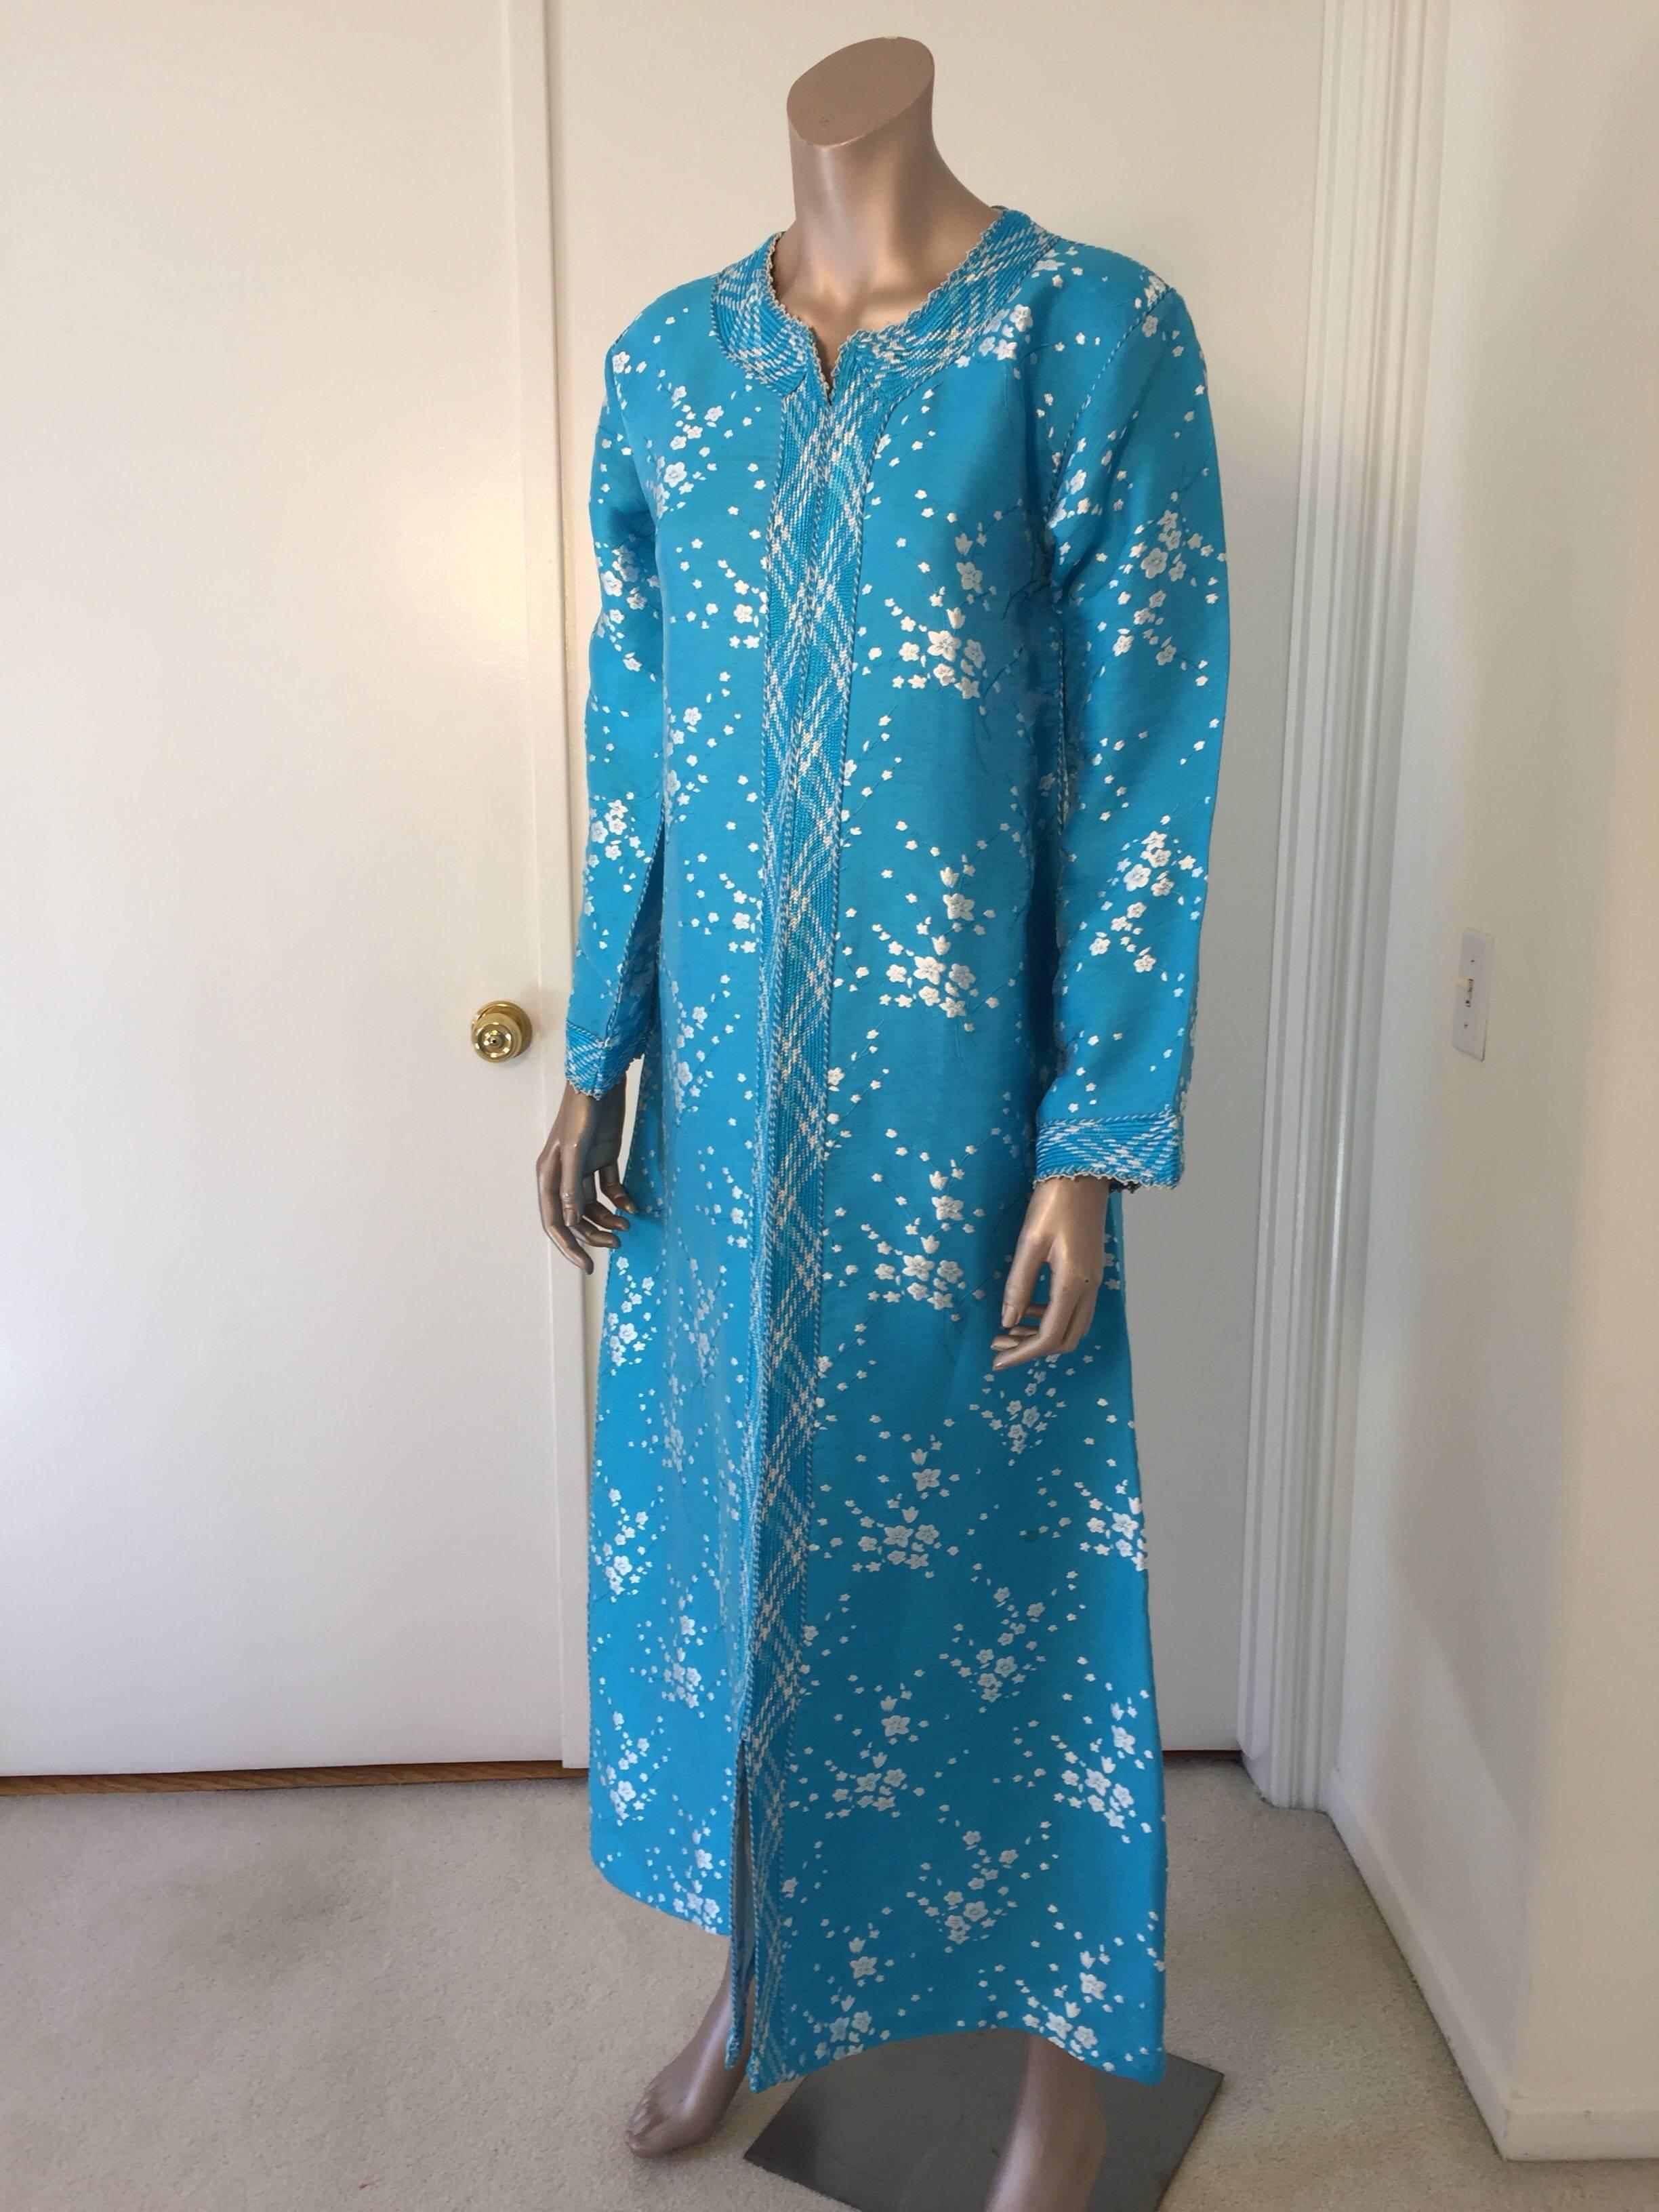 Elegant kaftan marocain vintage bleu turquoise, brodé de turquoise et de blanc.
Cette robe maxi kaftan chic de style bohème est brodée et agrémentée d'une bordure bleue et blanche. 
Robe de soirée marocaine du Moyen-Orient, unique en son